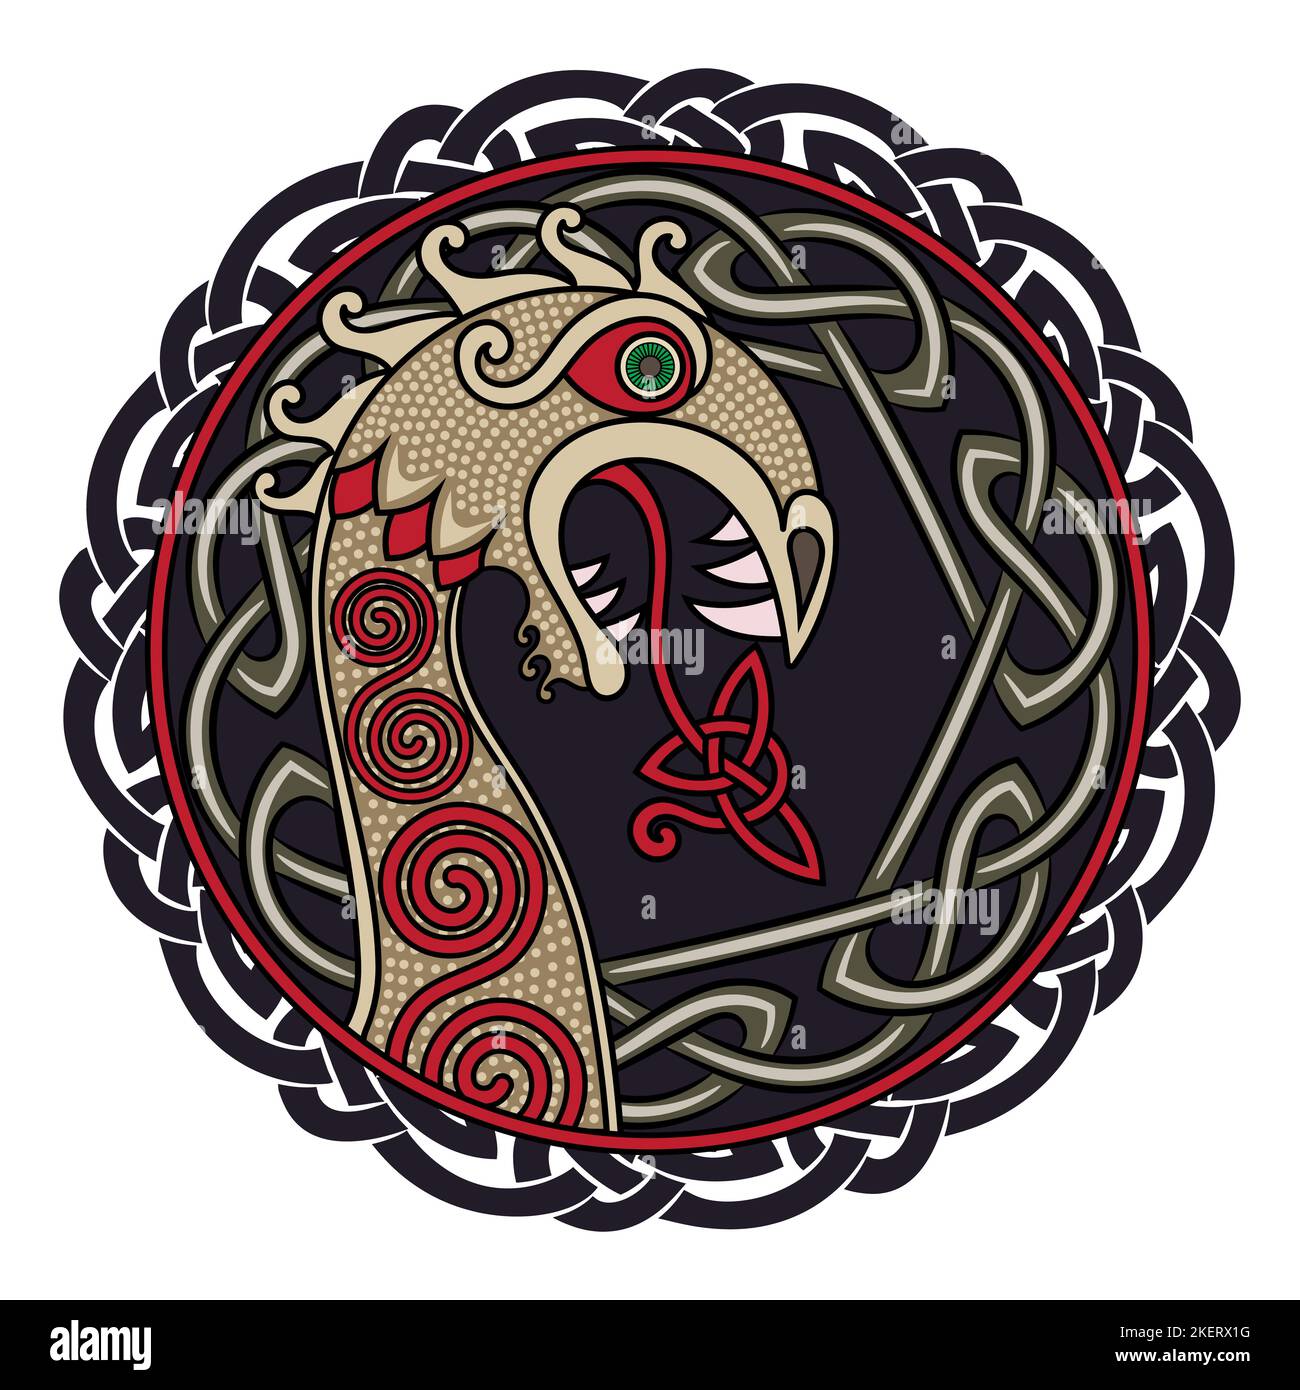 Design scandinave. Le personnage nasal du bateau viking Drakkar sous forme de dragon, et le motif scandinave torsadé Illustration de Vecteur